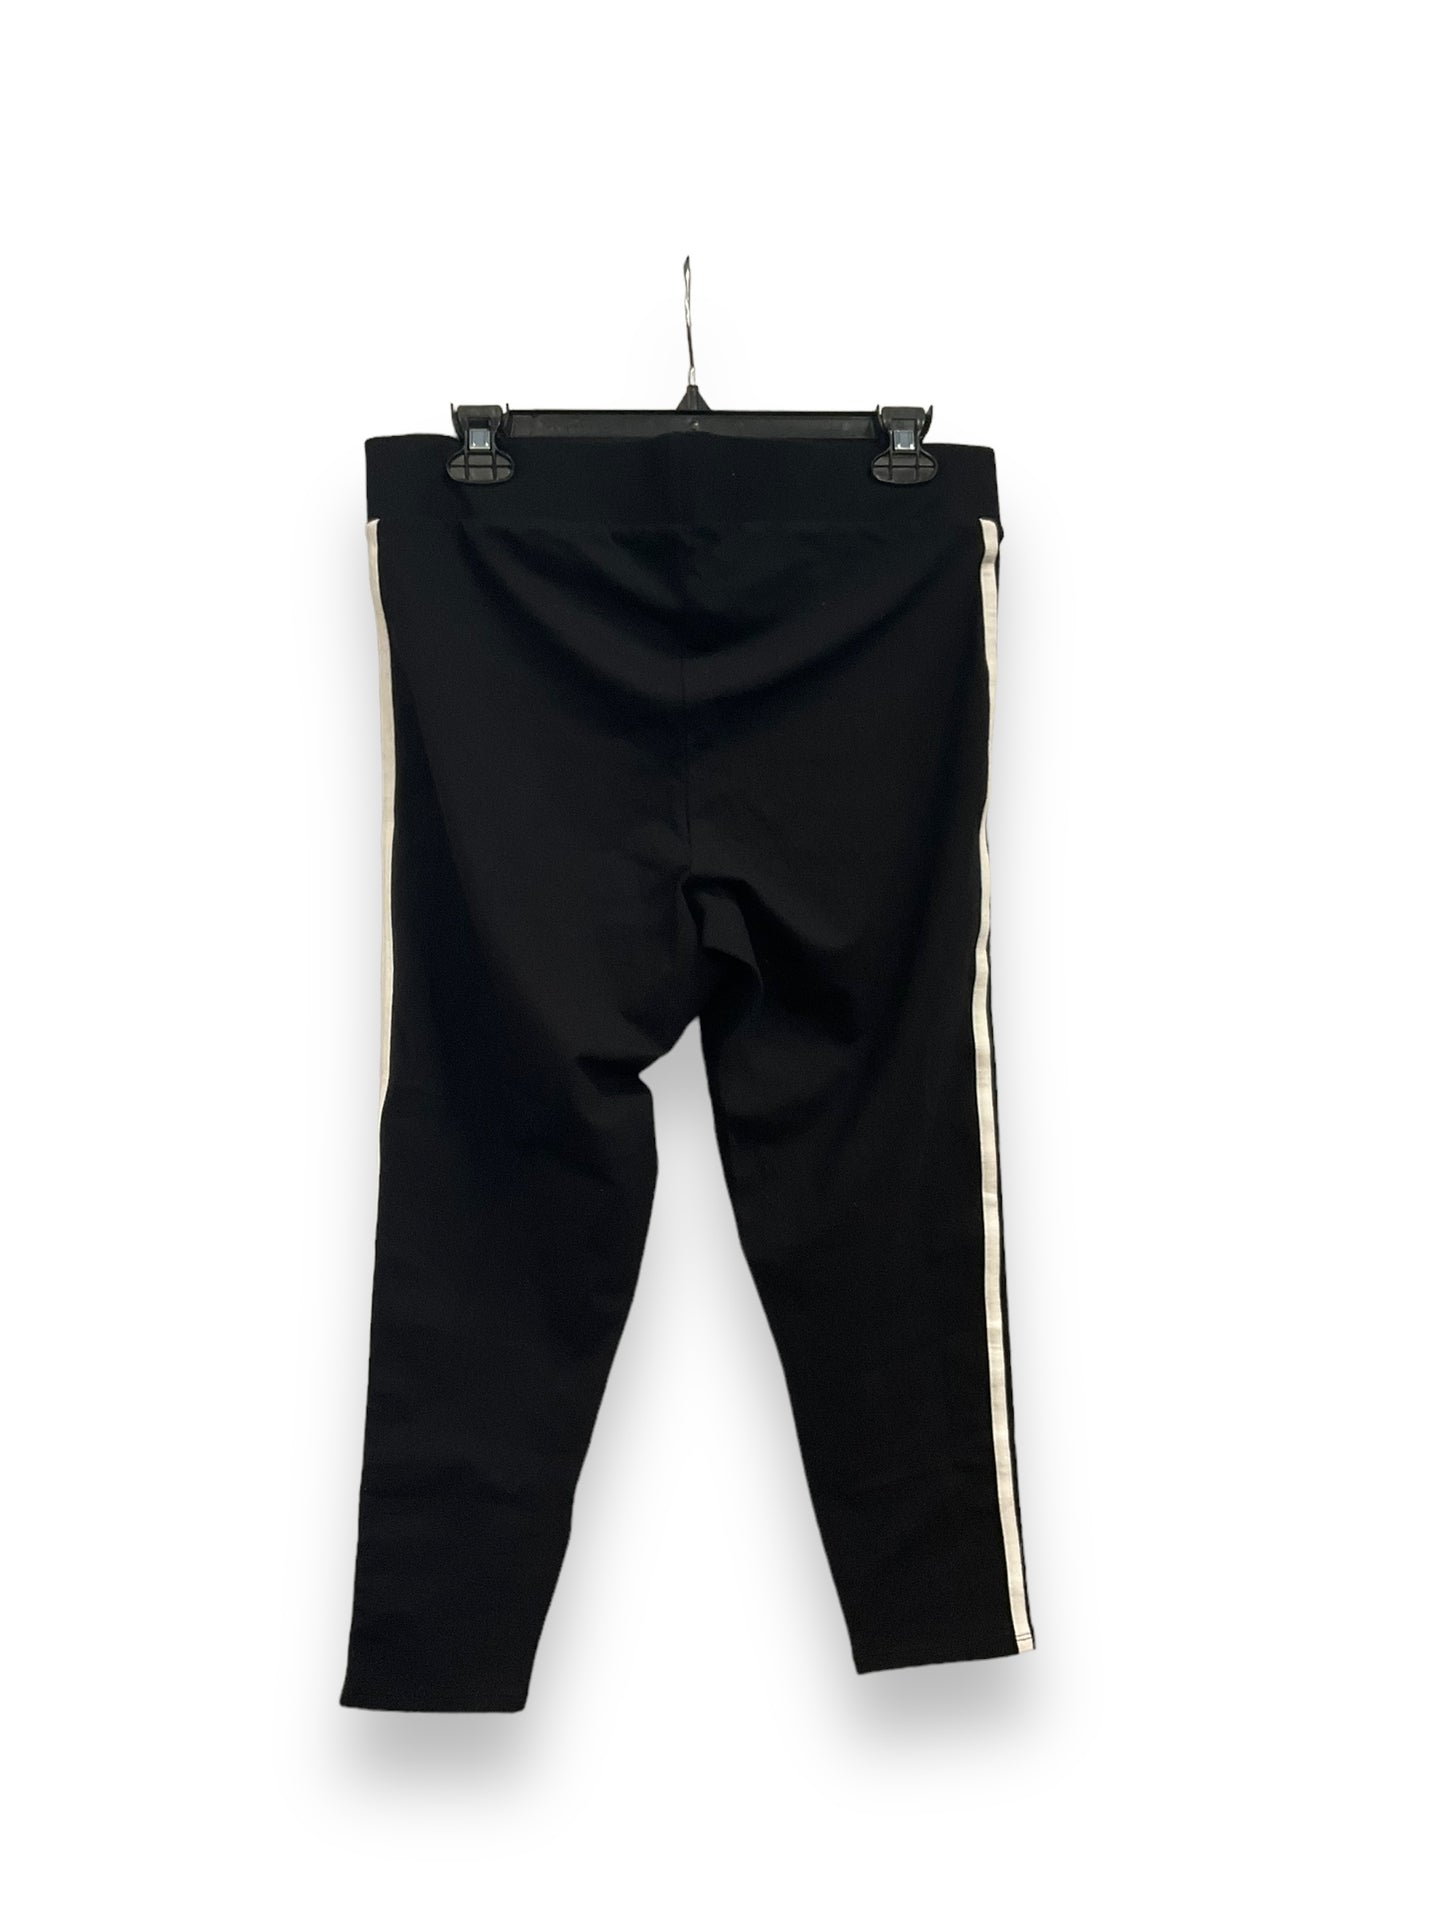 Pants Leggings By Torrid  Size: 1x